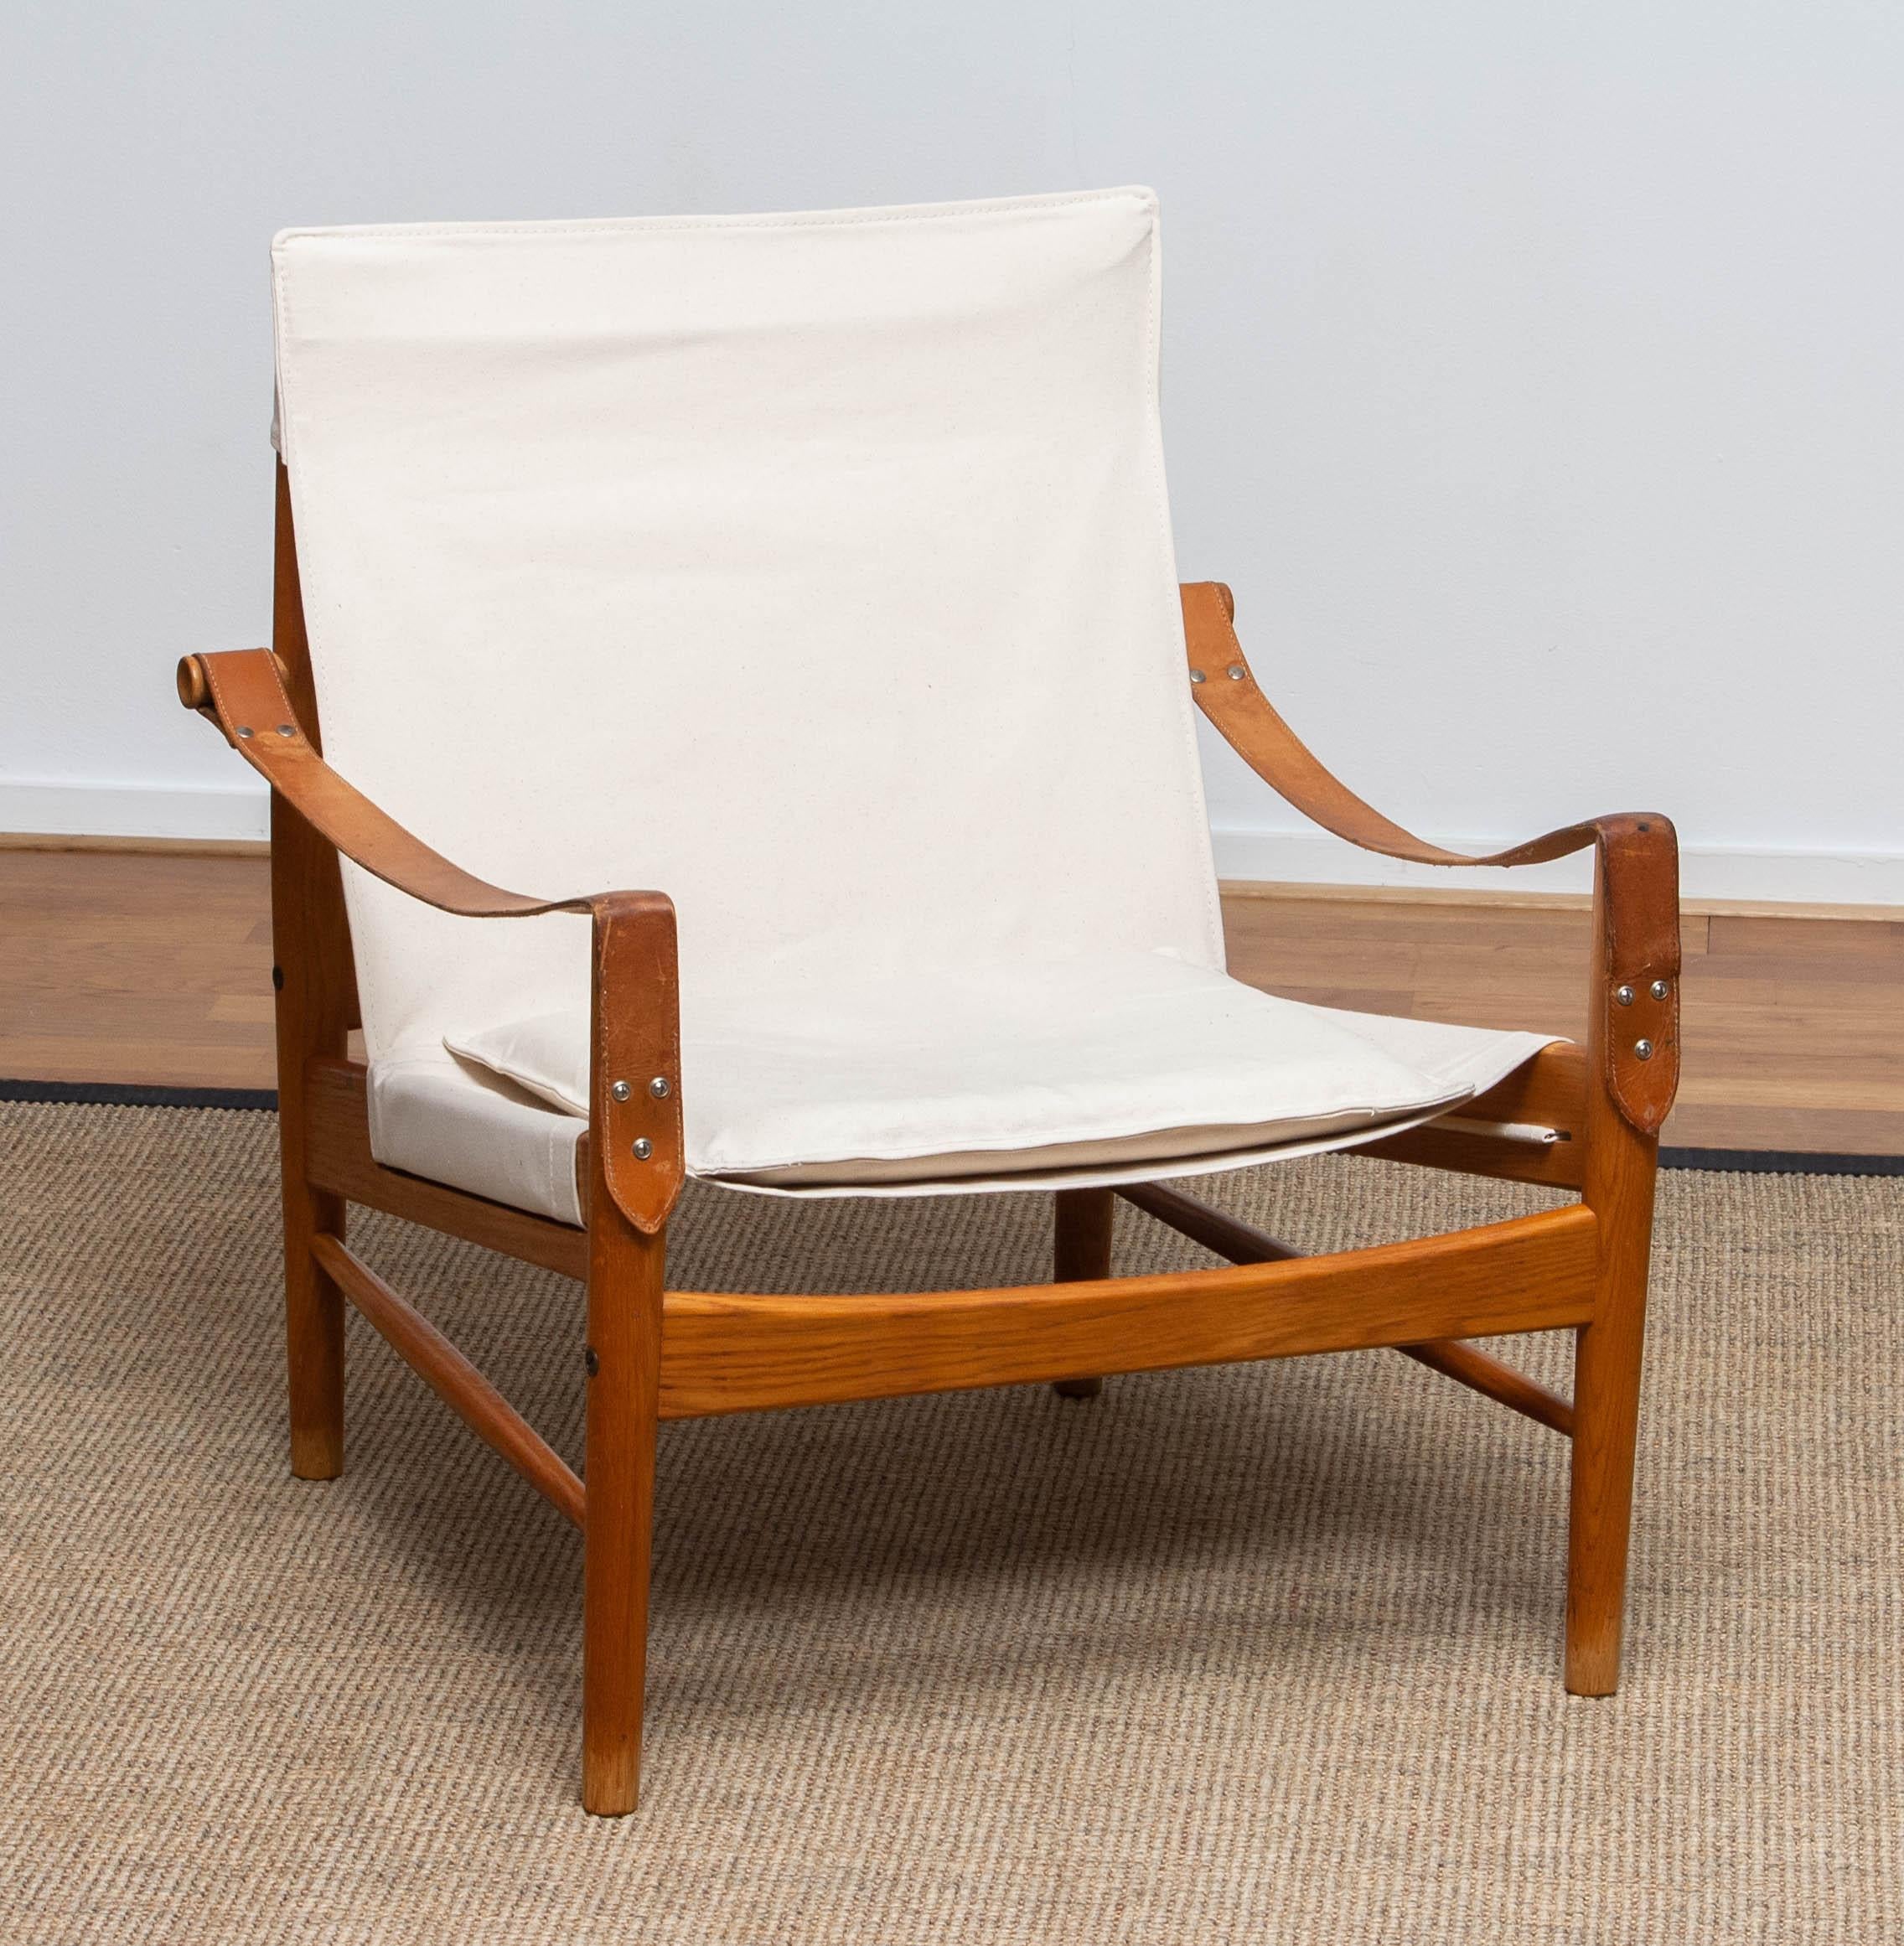 Schöner Safaristuhl, entworfen von Hans Olsen für Viska Möbler in Kinna, Schweden.
Diese Stühle sind aus Eichenholz mit einer neuen Polsterung aus Segeltuch gefertigt.
Es ist in einem wunderbaren Zustand und markiert.
Zeitraum: 1960s.
Abmessungen: H